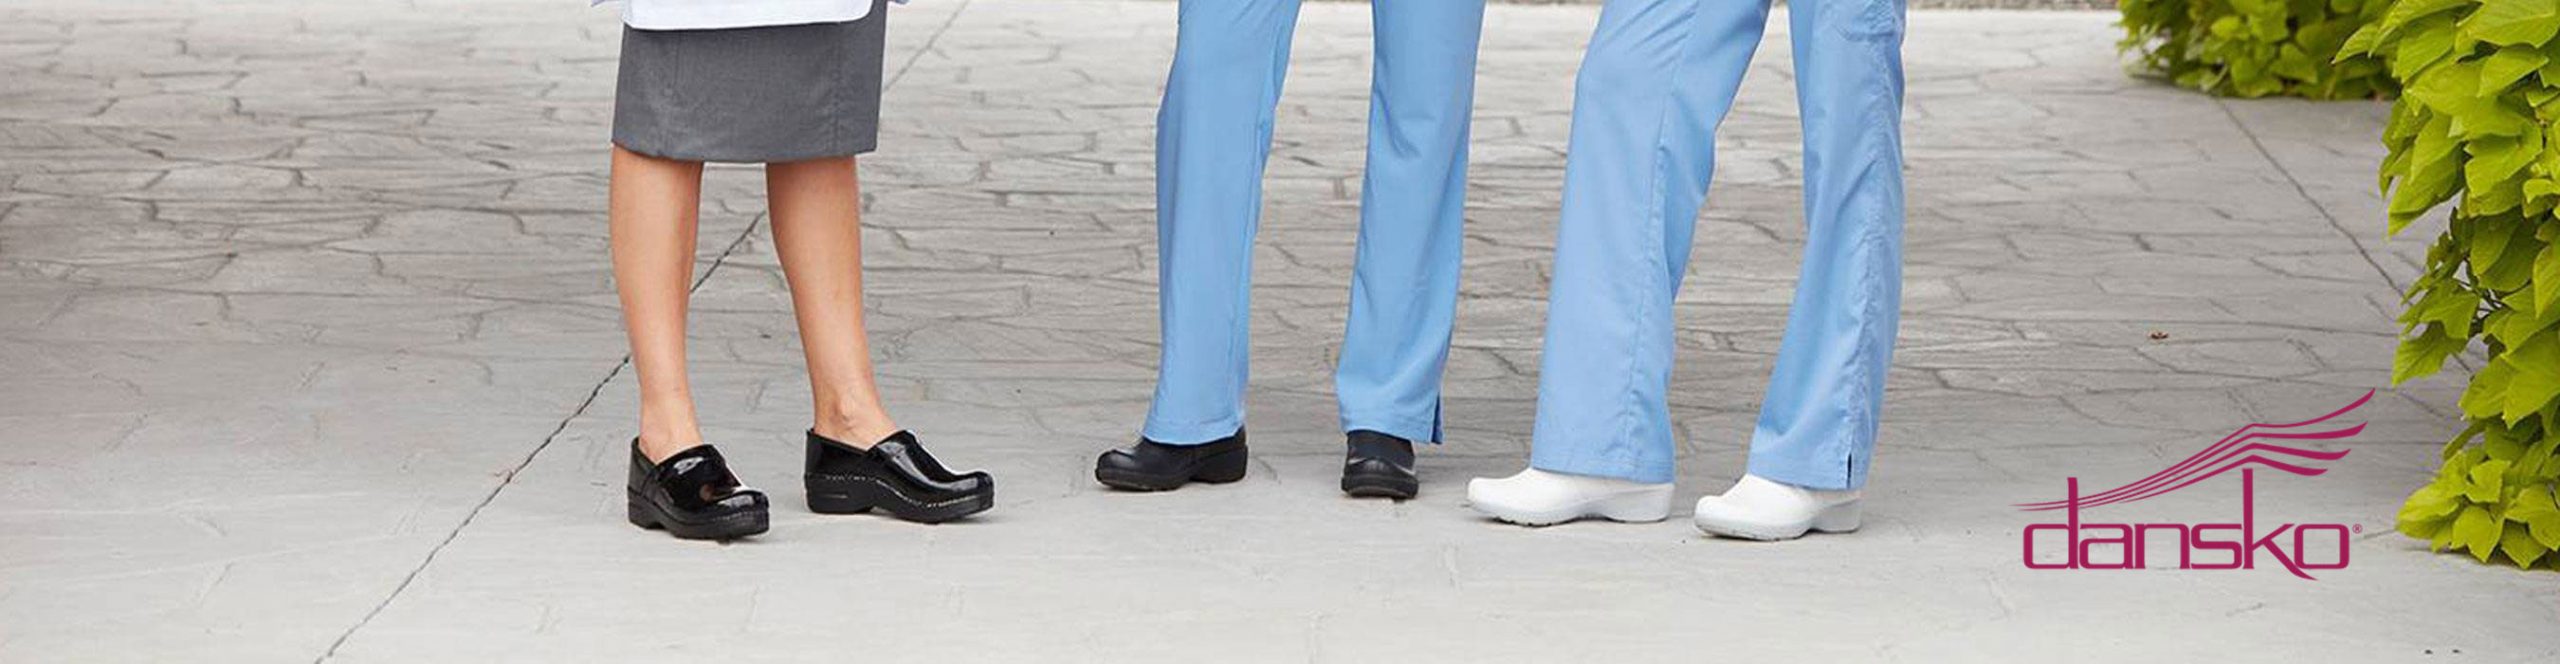 Group of people wearing Dansko shoes.